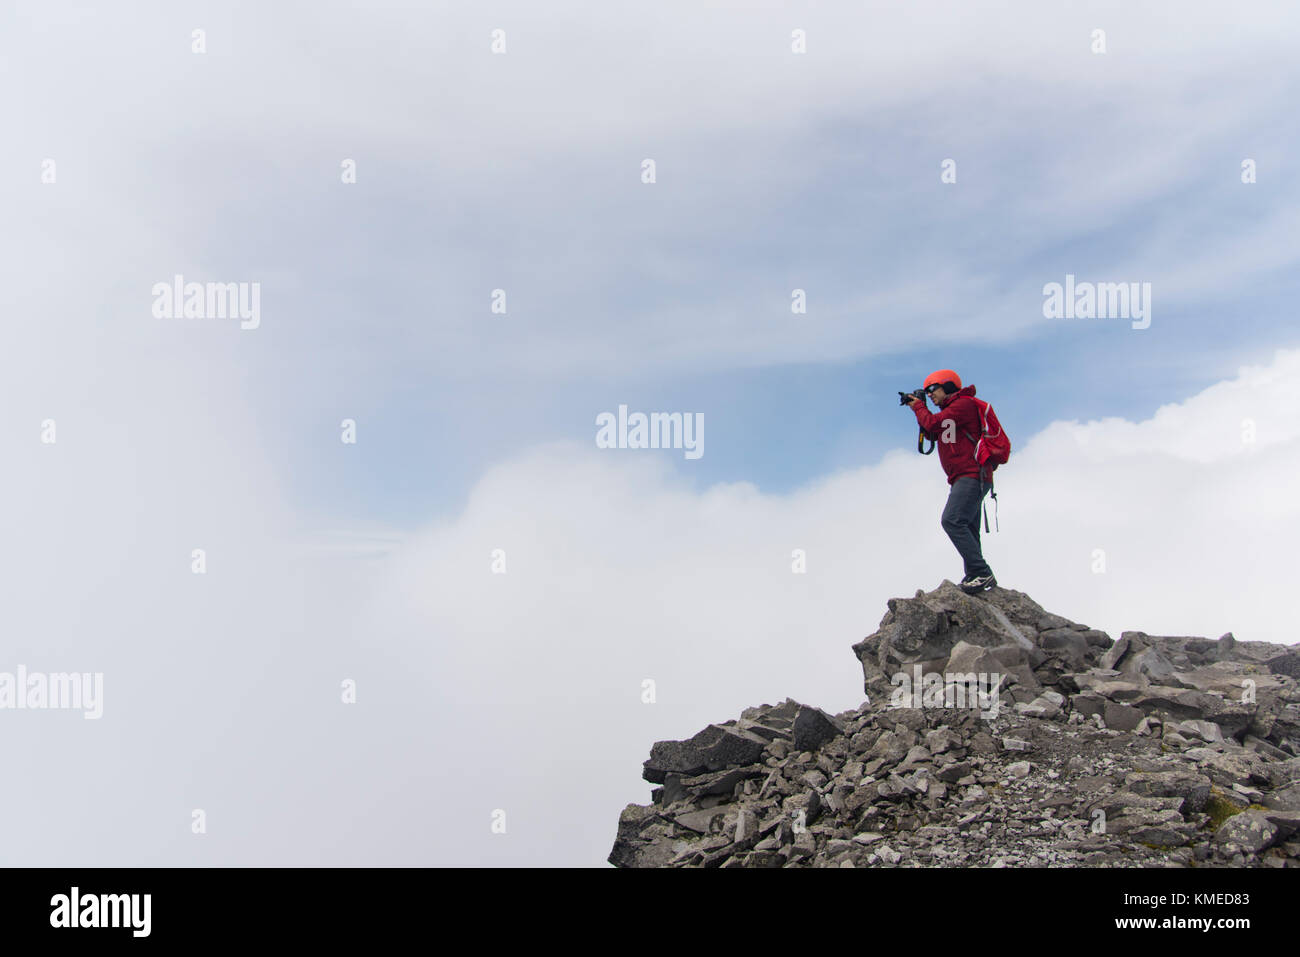 One man shooting a photographic camera at the Nevado de Toluca volcano during a foggy day in Estado de Mexico, Mexico. Stock Photo